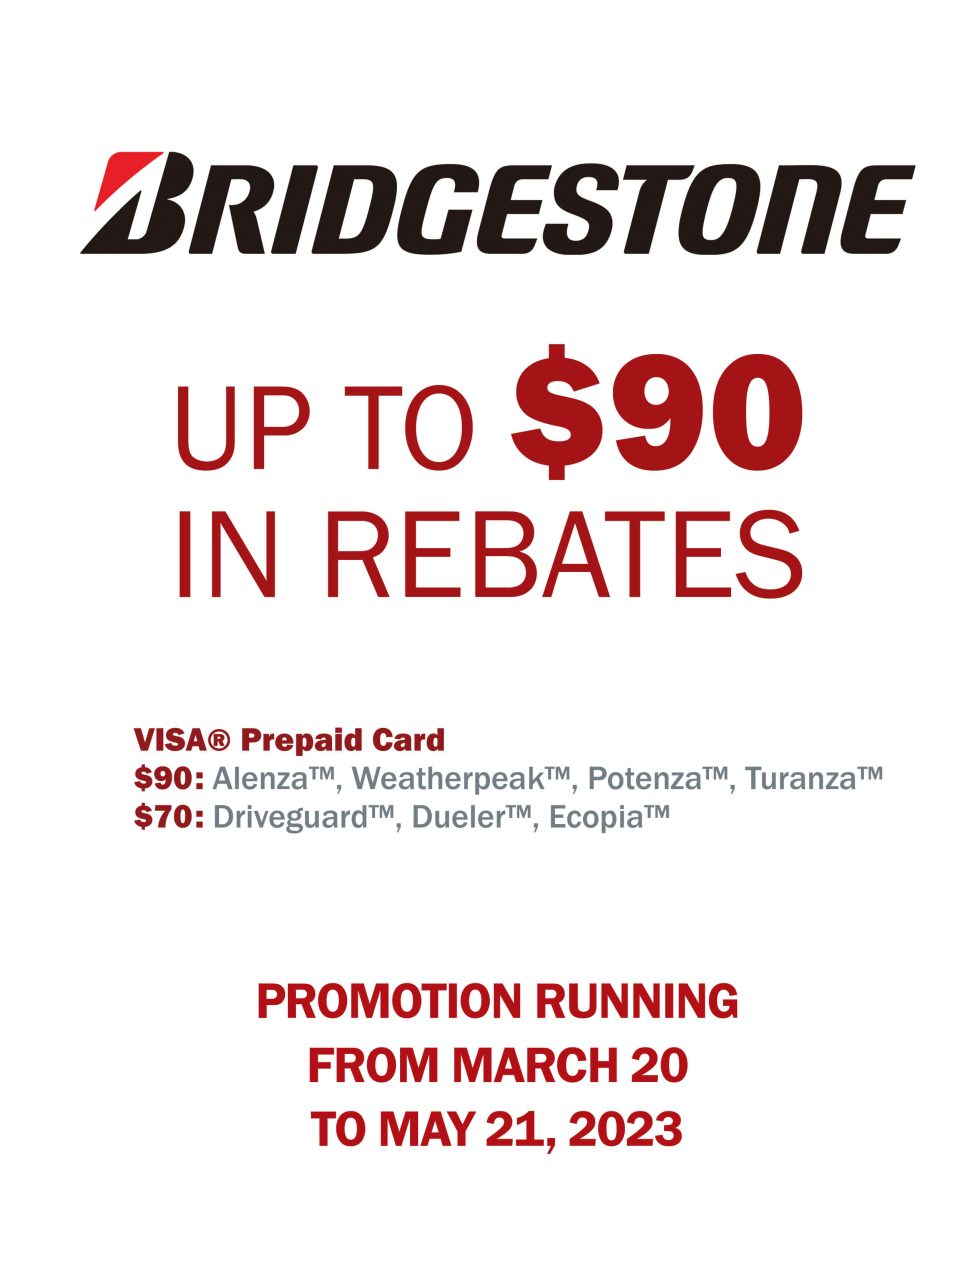 bridgestone-spring-2023-rebate-anderson-automotive